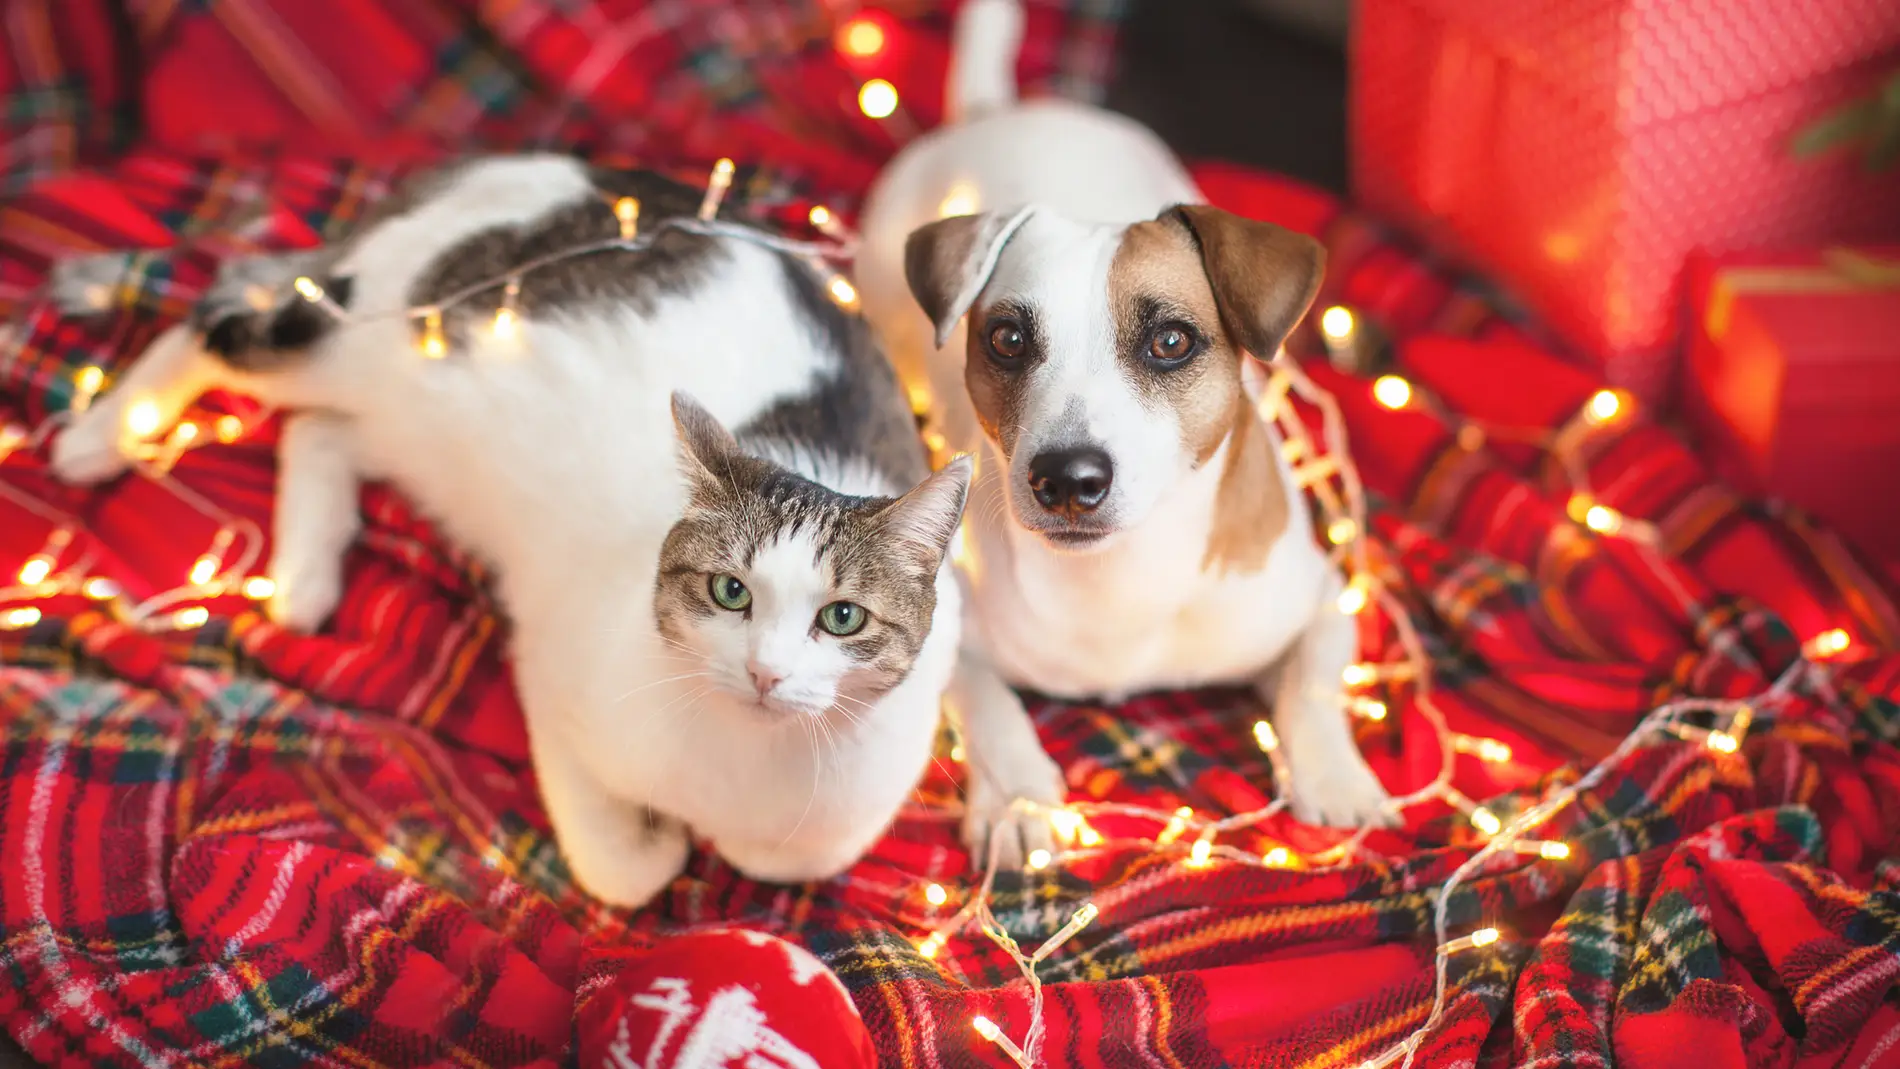 Decoraciones navideñas que pueden ser peligrosas para tus mascotas